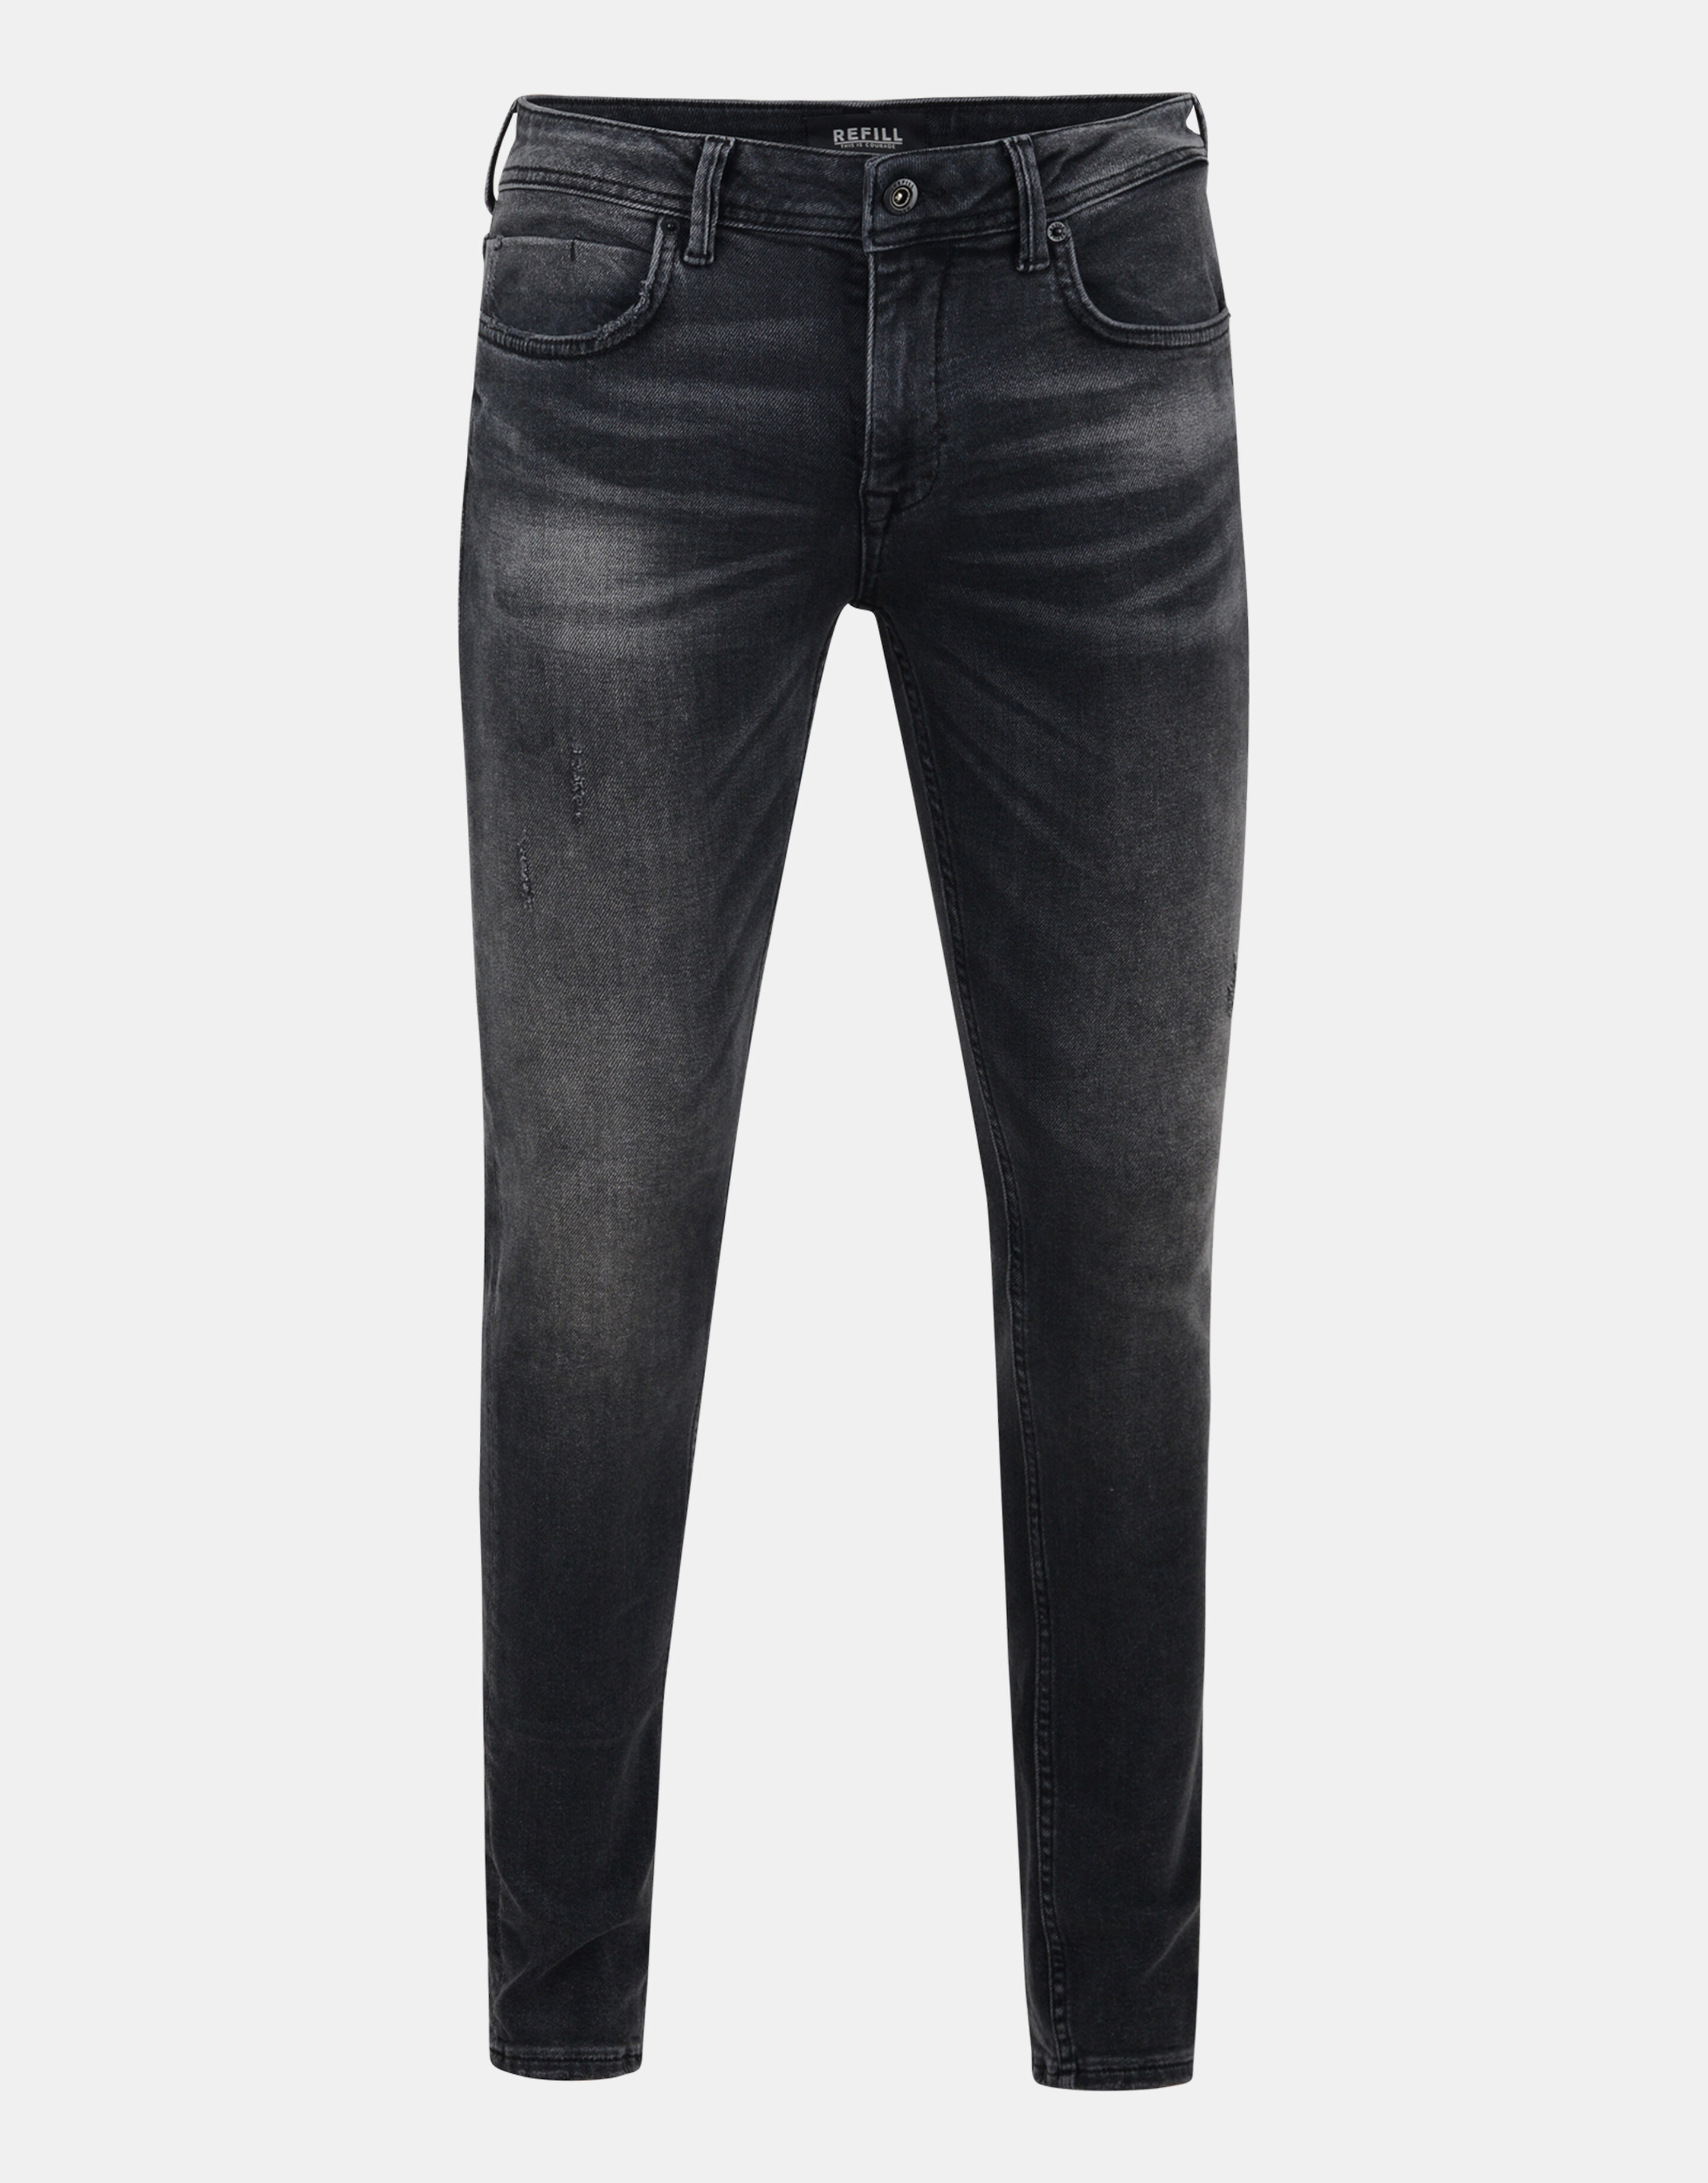 Black Jeans L32 REFILL